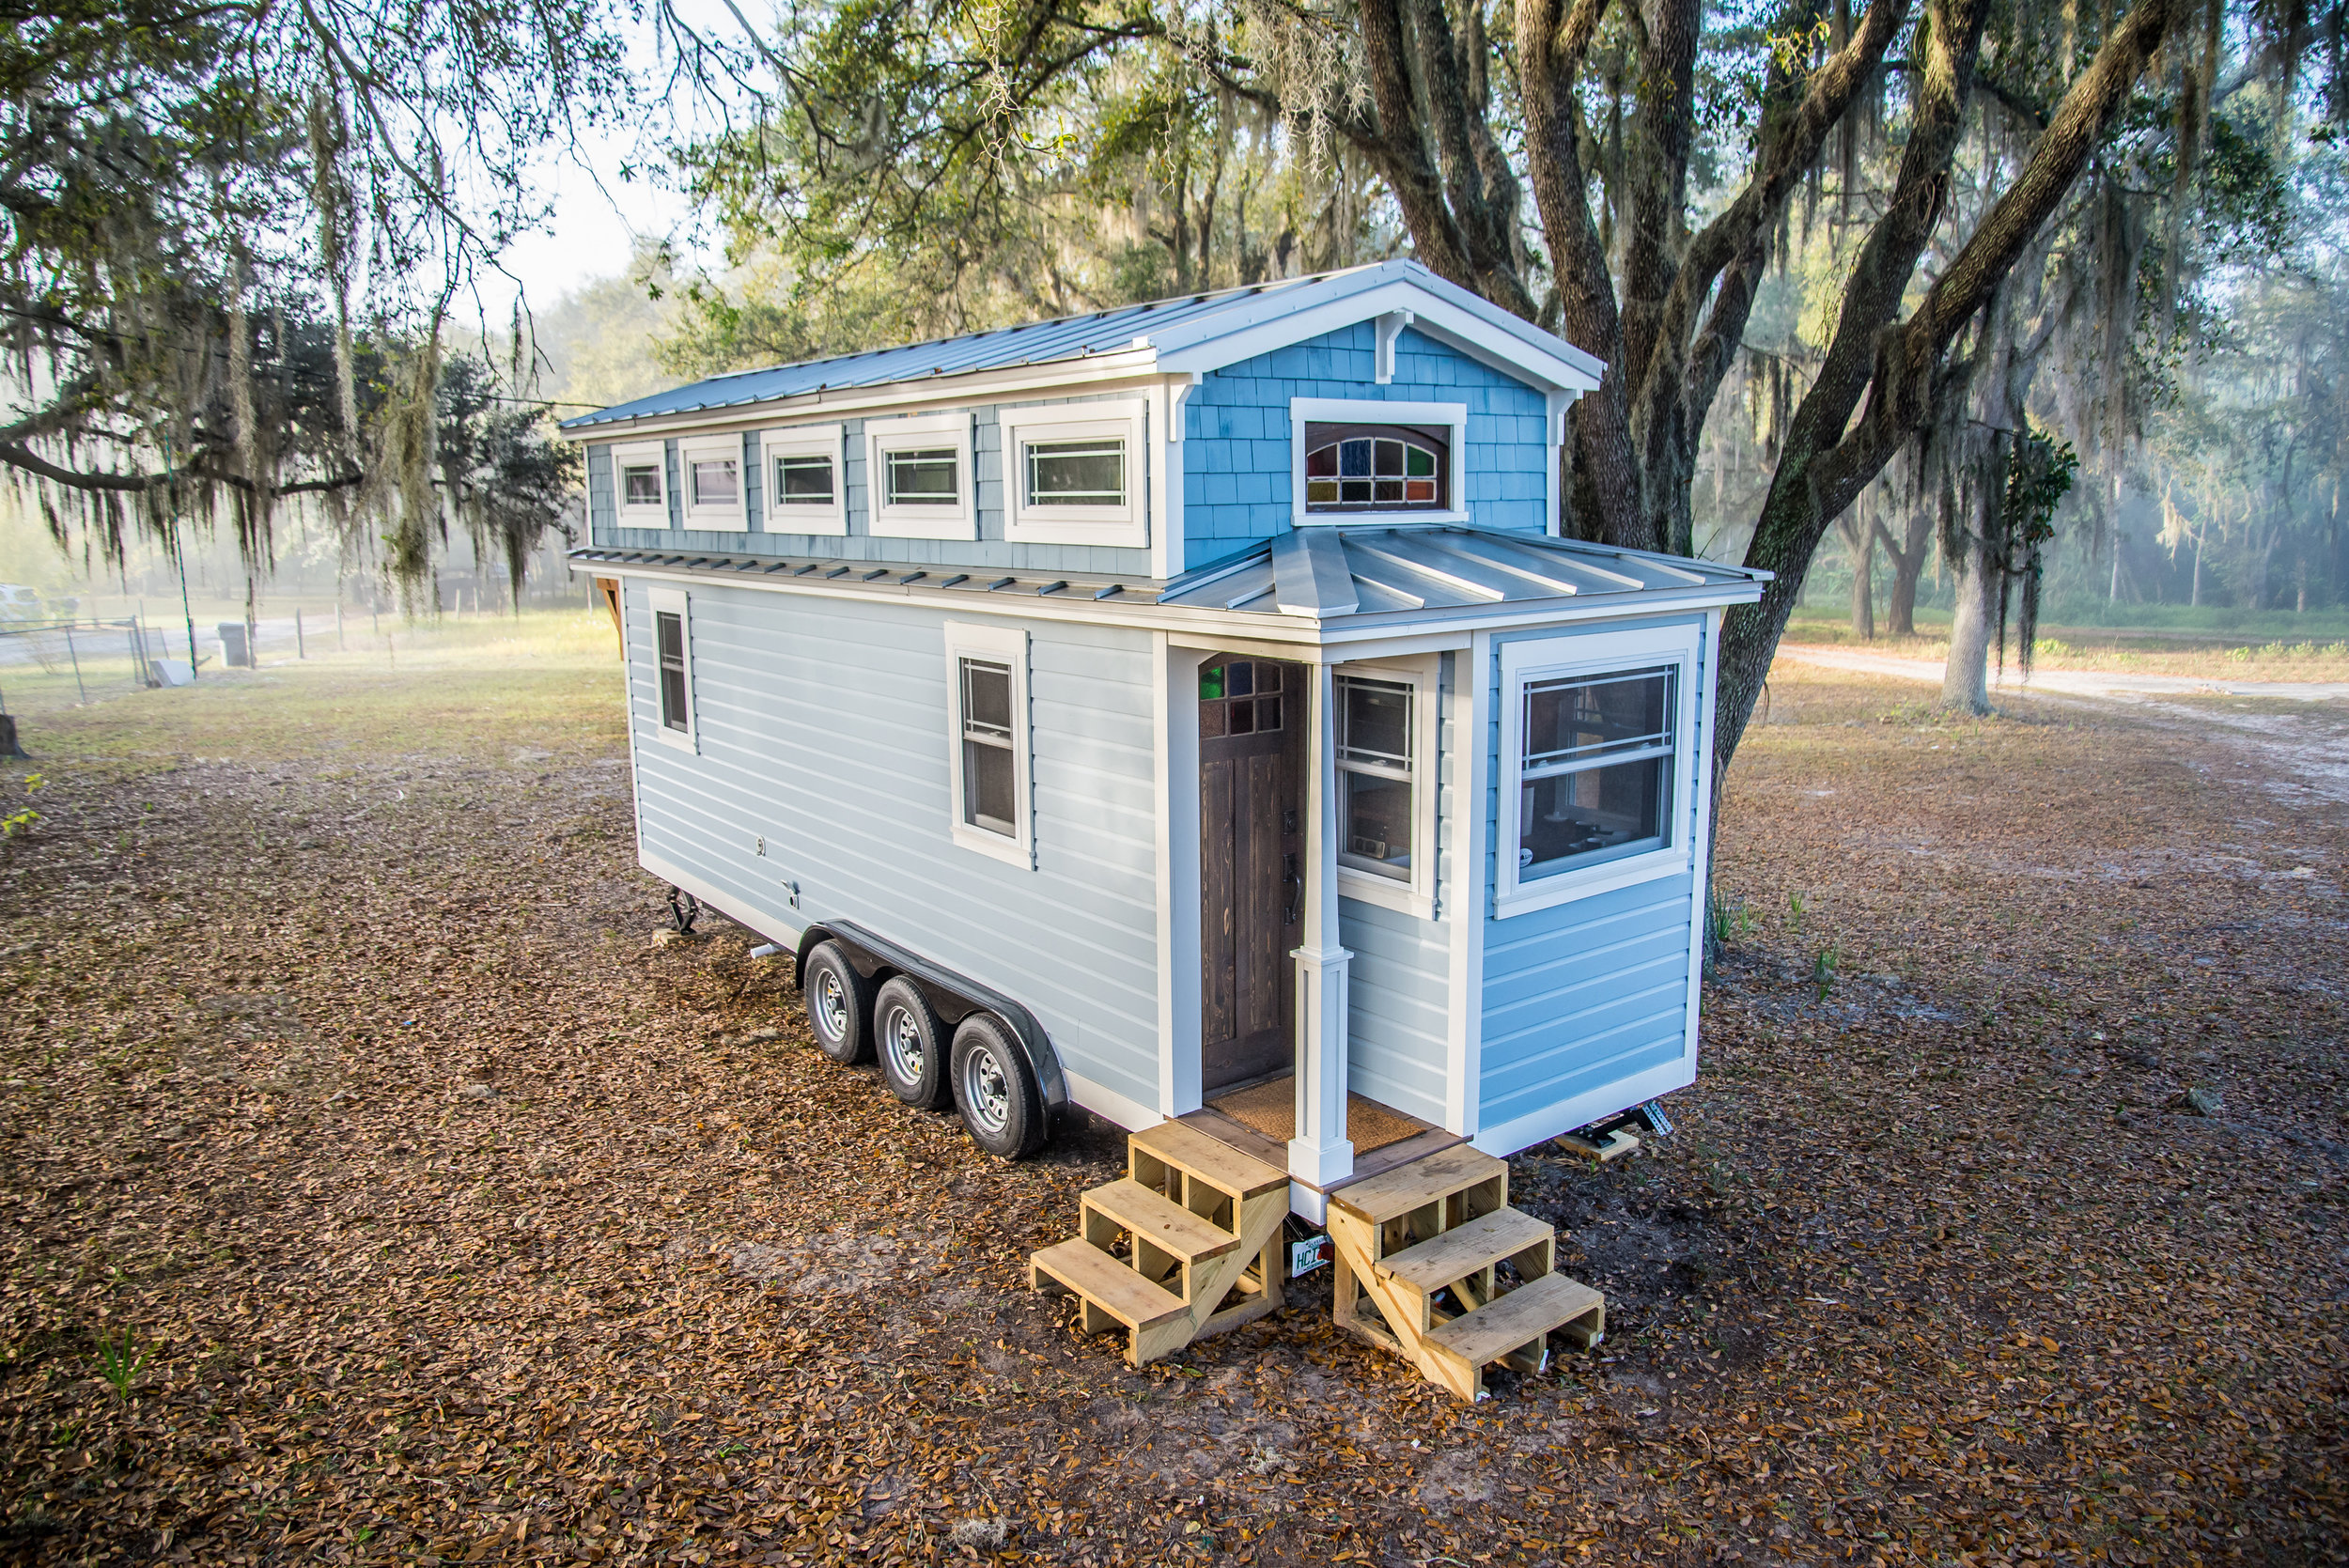 25 Tiny House Storage Ideas for Any Size Home — Tiffany The Tiny Home